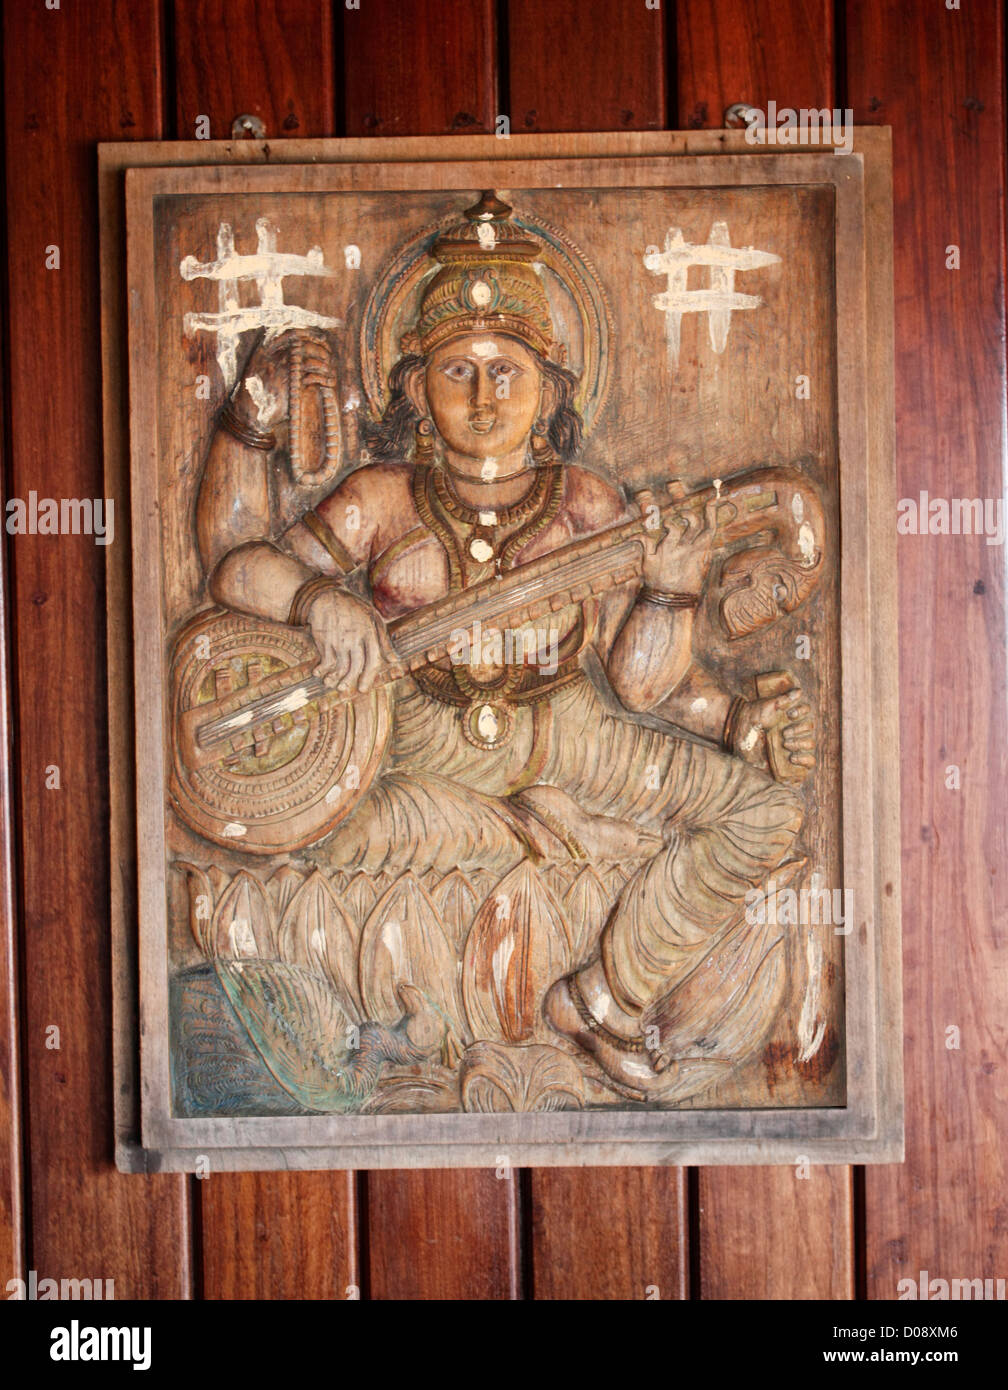 Design auf einer Holzwand - Devi Saraswathy mit Vina Stockfoto